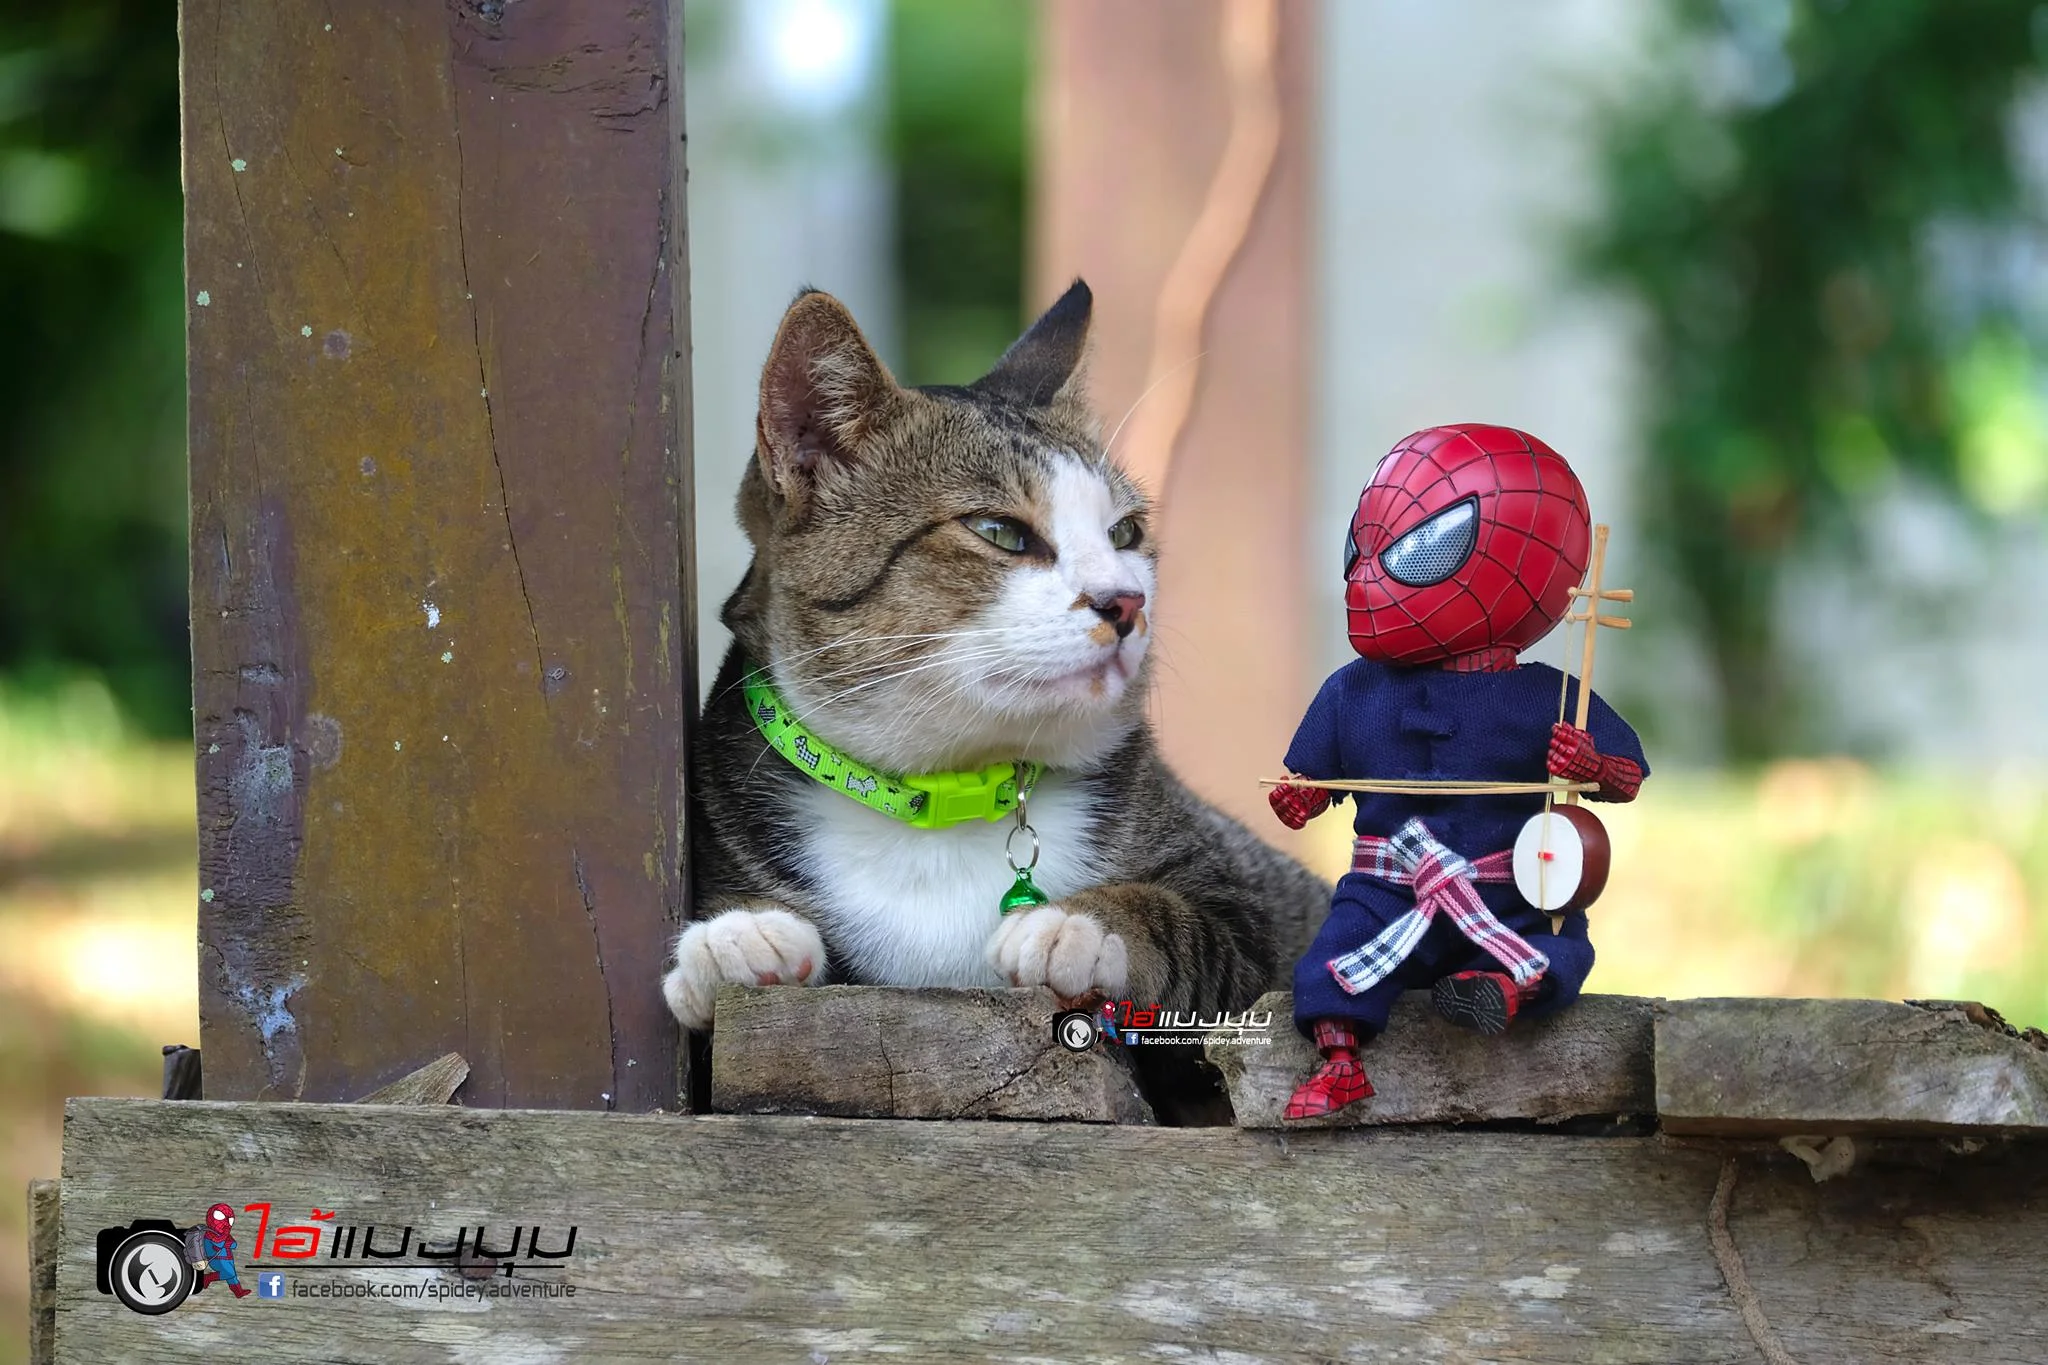 Художник добавил к фото с котиками изображение Человека-паука – это выглядит очень смешно - фото 459362